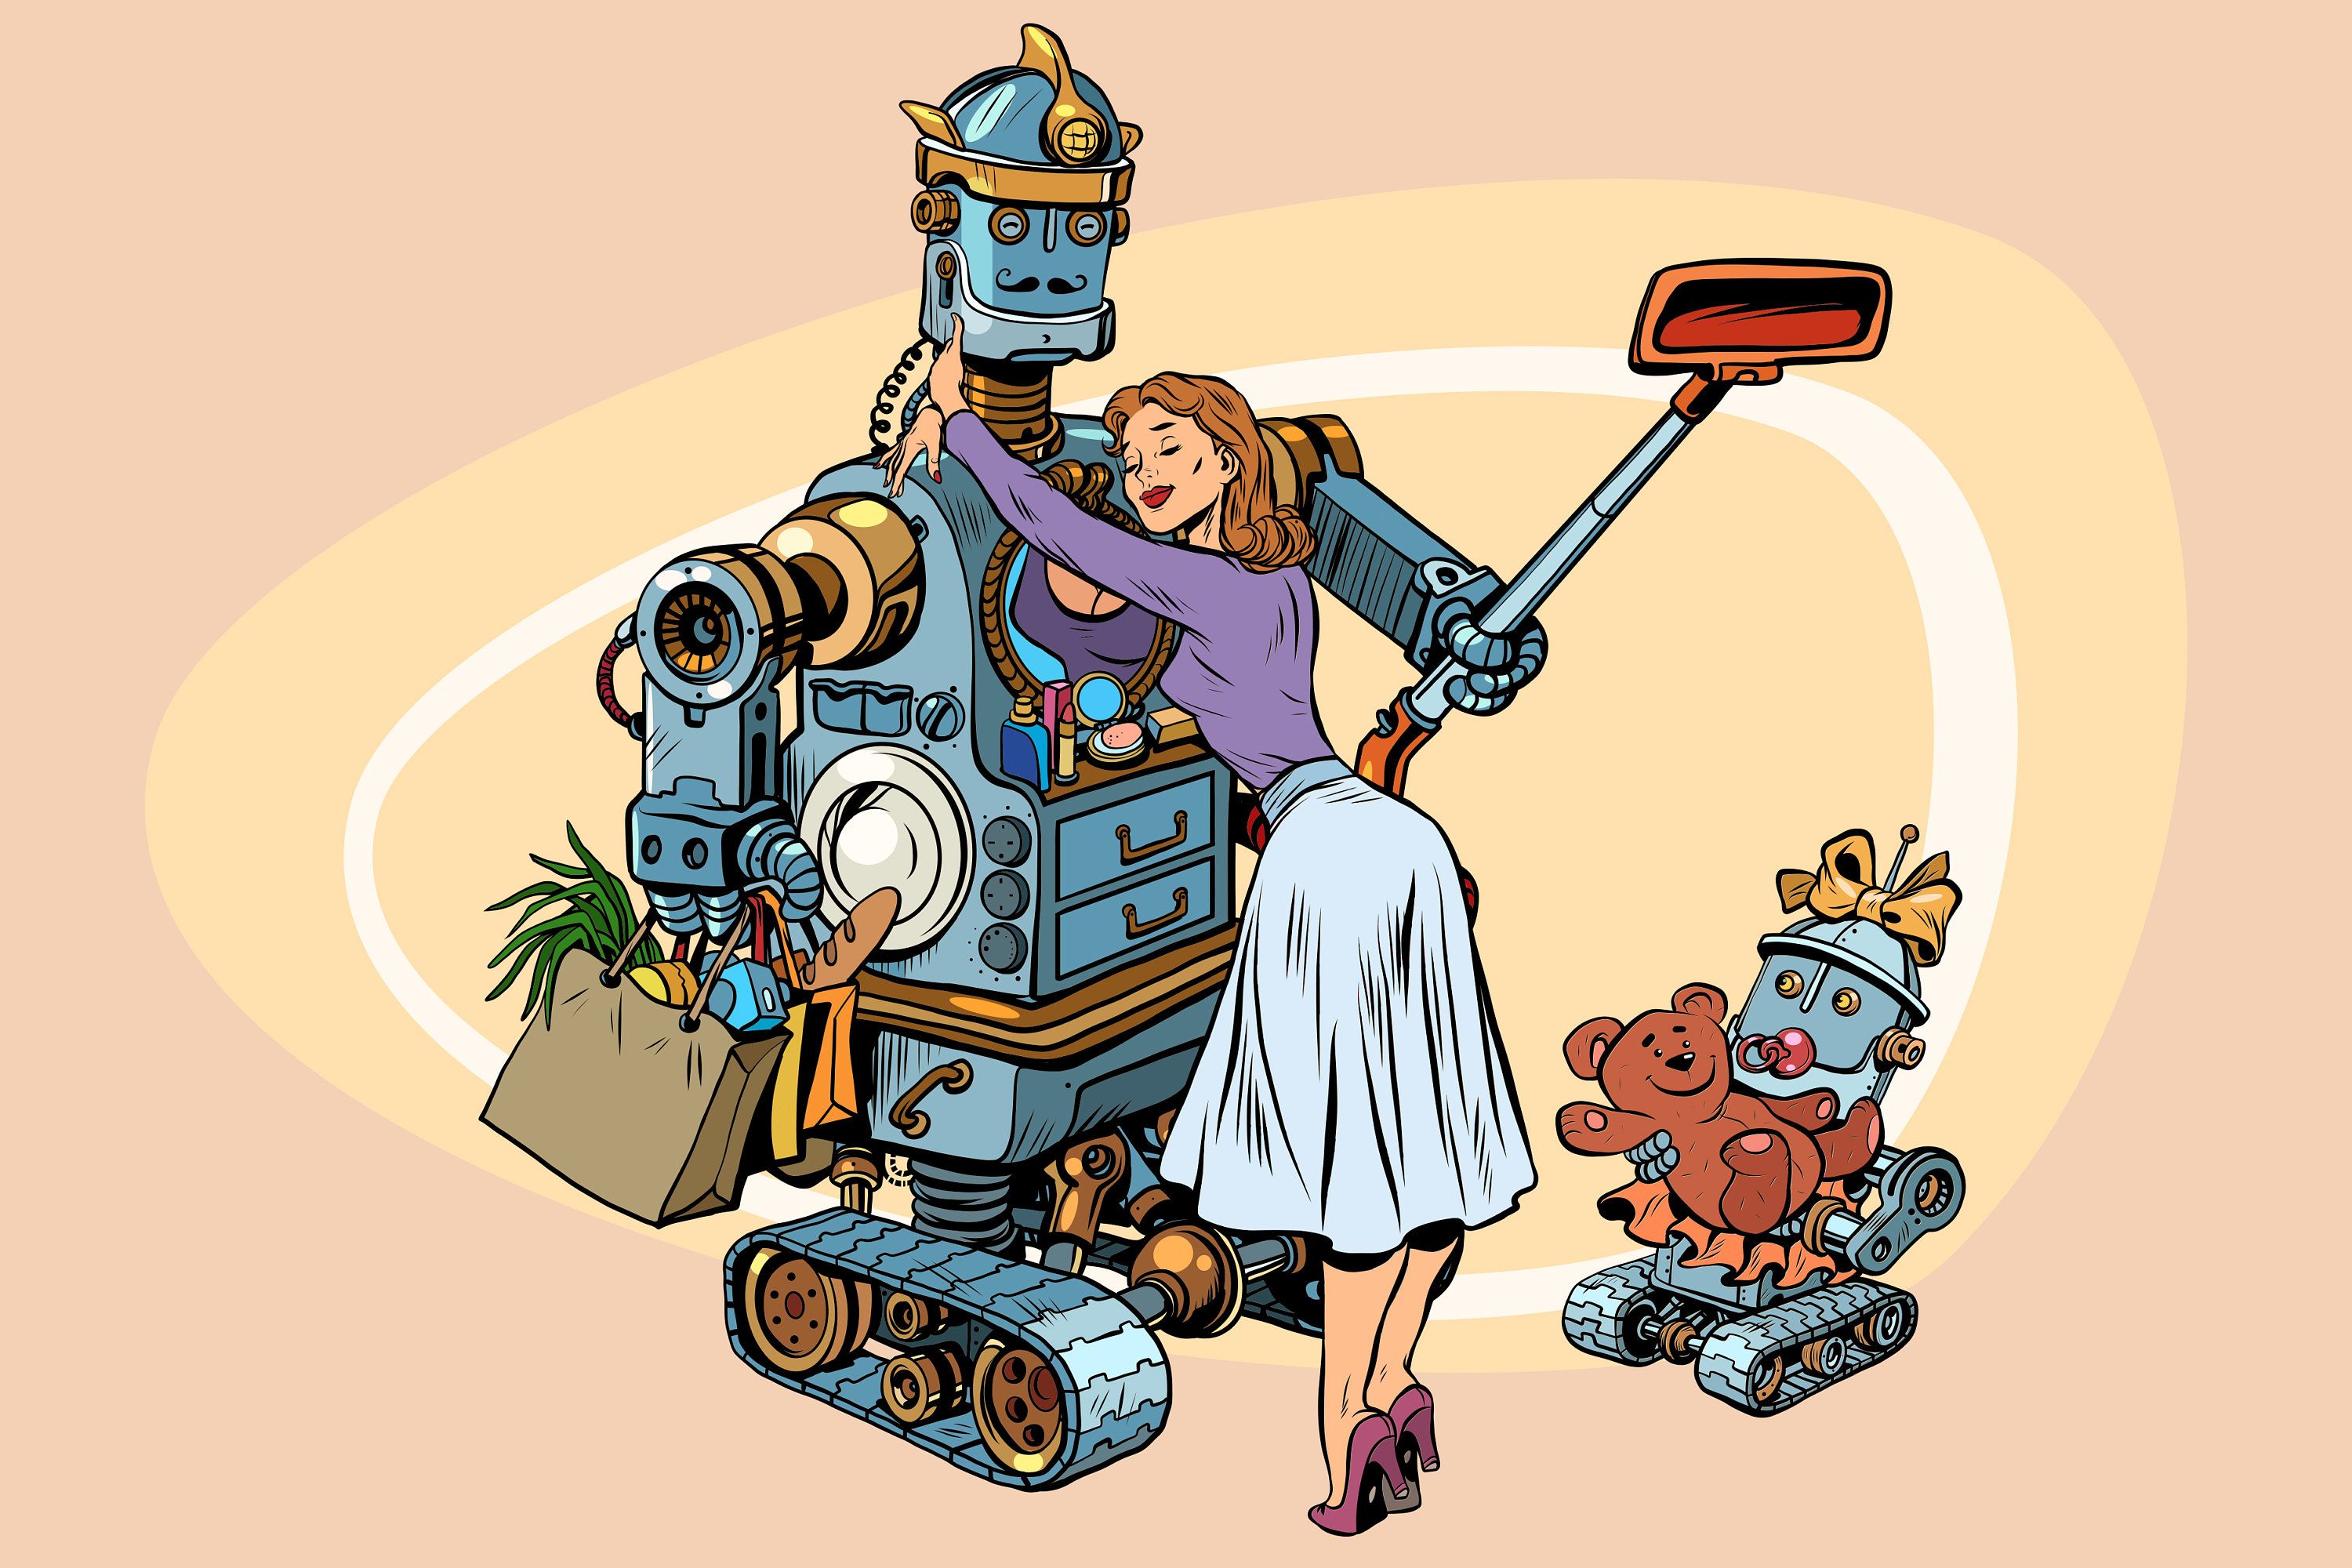 Папа она робот. Робот пылесосит картинка. Робот иллюстрация для детей. Робот папа картинки. Робот будущего иллюстрация.